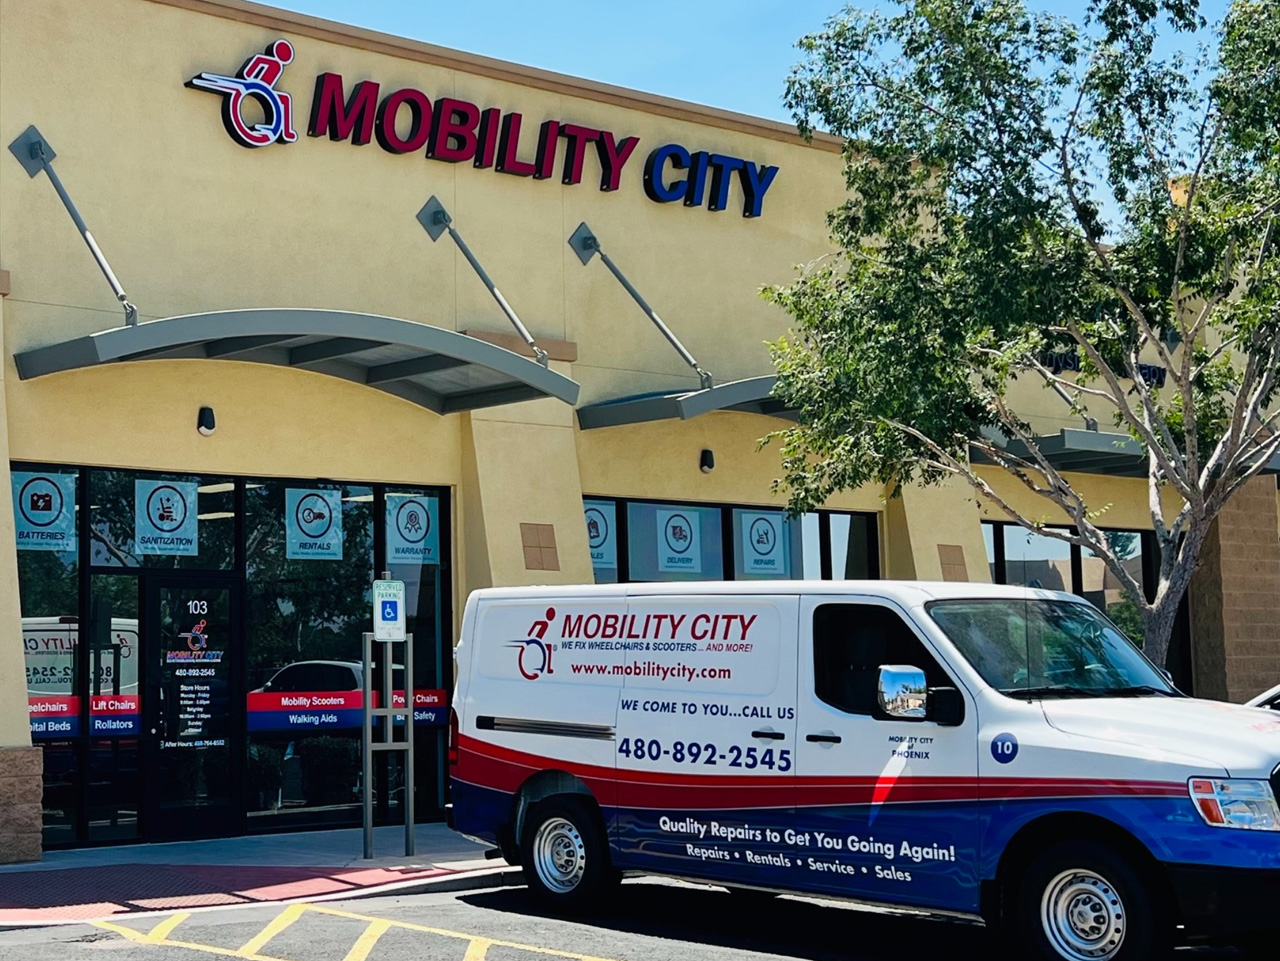 Mobility City of Phoenix, AZ